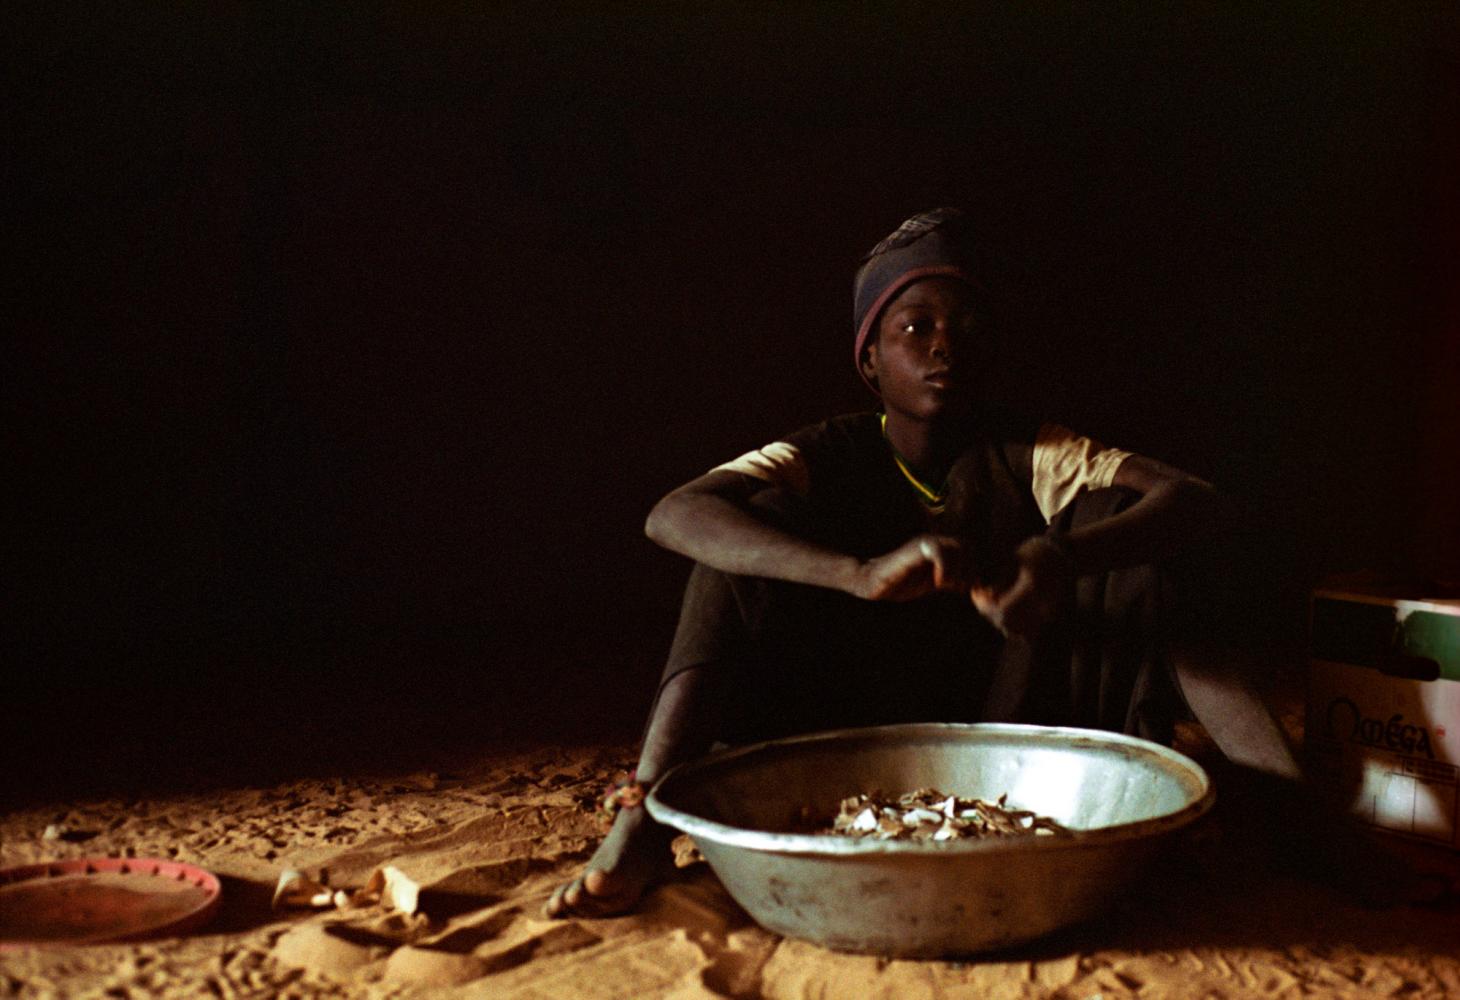 Assis sur le sol de sable, une grande bassine métallique devant lui, Aliou découpe du carton en petits morceaux. Touba, Sénégal, février 2008.